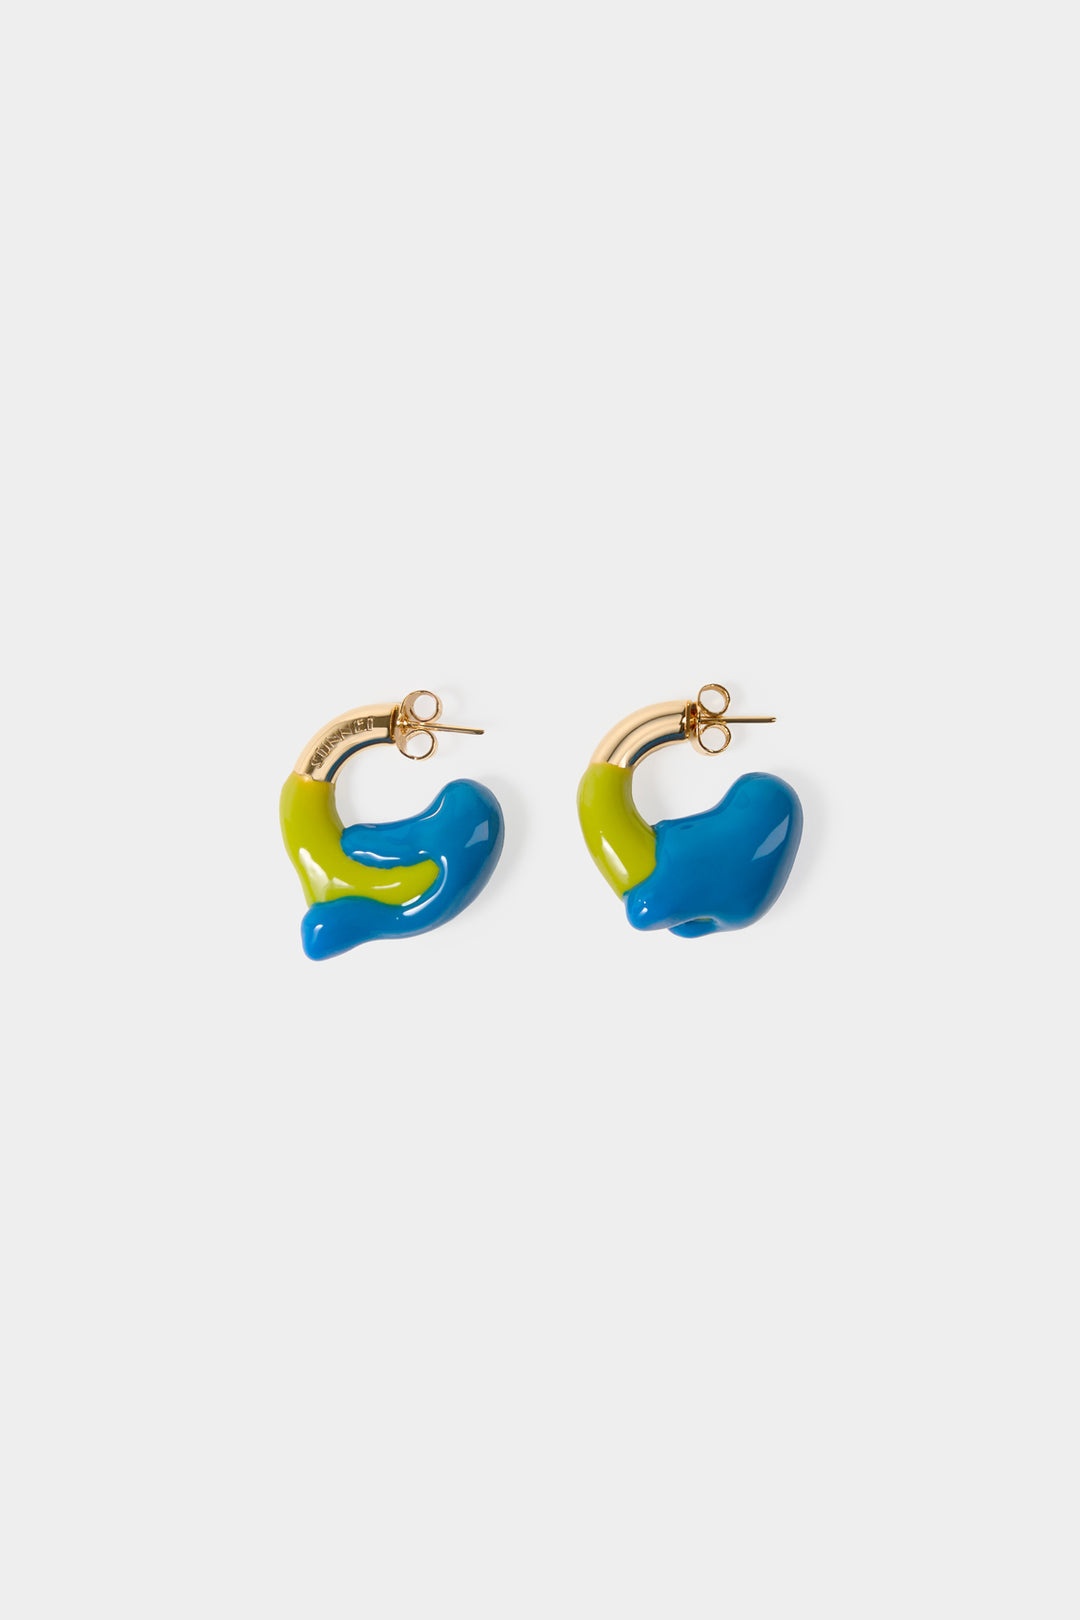 MINI RUBBERIZED EARRINGS GOLD / acid green & bright blue - 1